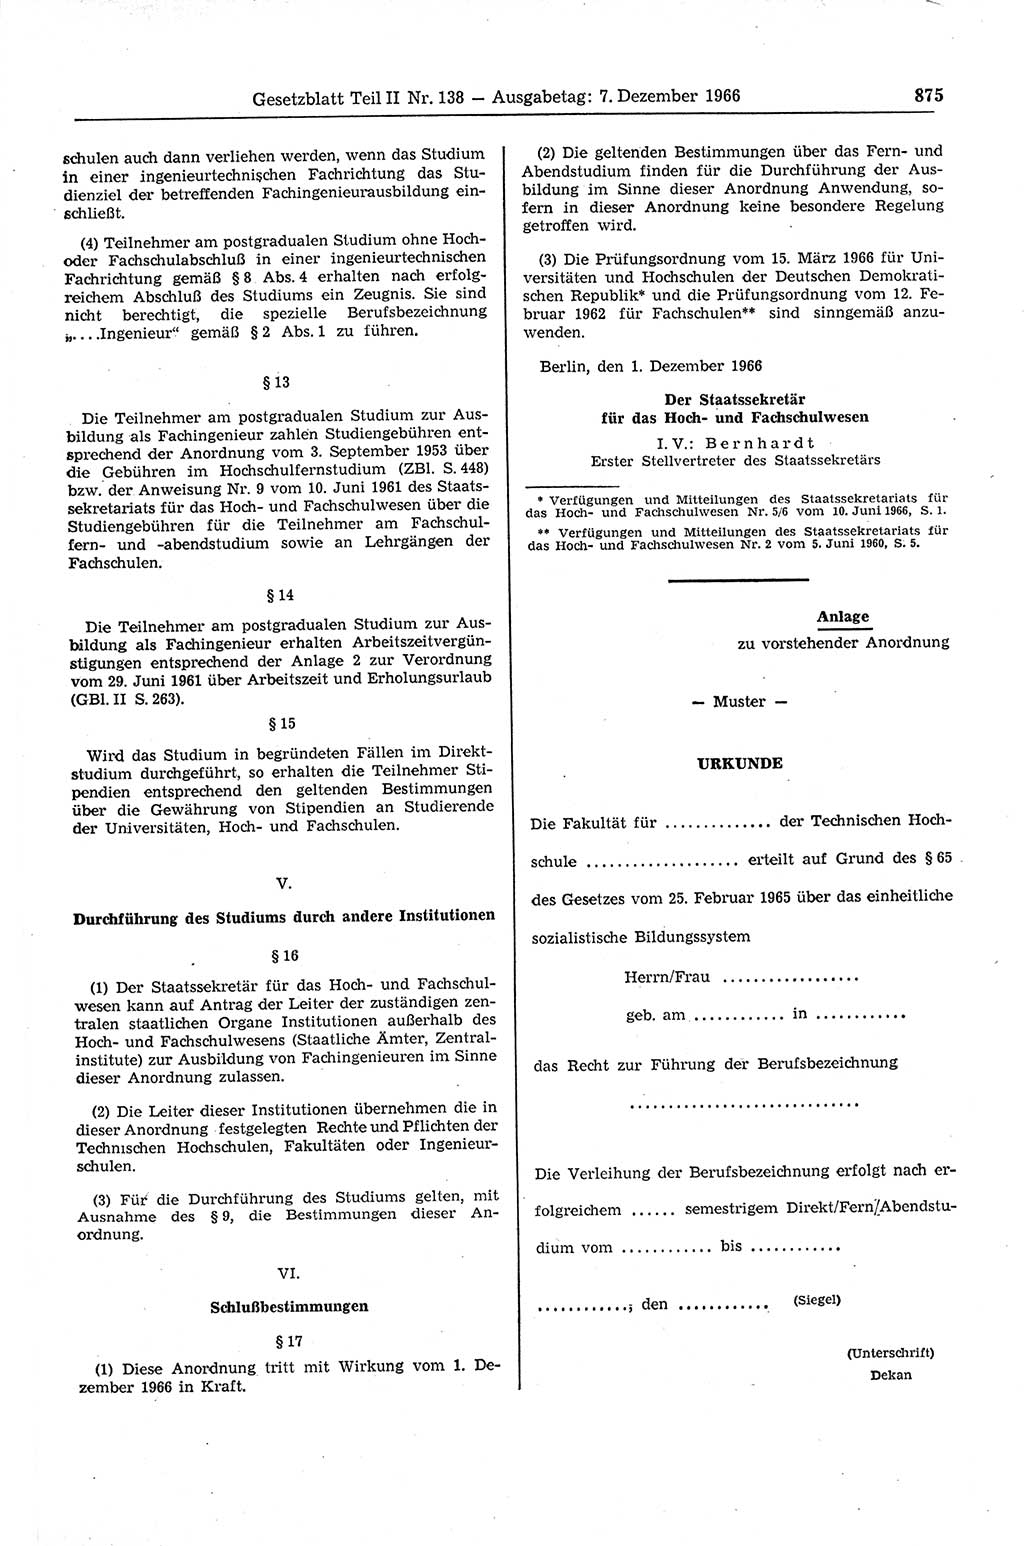 Gesetzblatt (GBl.) der Deutschen Demokratischen Republik (DDR) Teil ⅠⅠ 1966, Seite 875 (GBl. DDR ⅠⅠ 1966, S. 875)